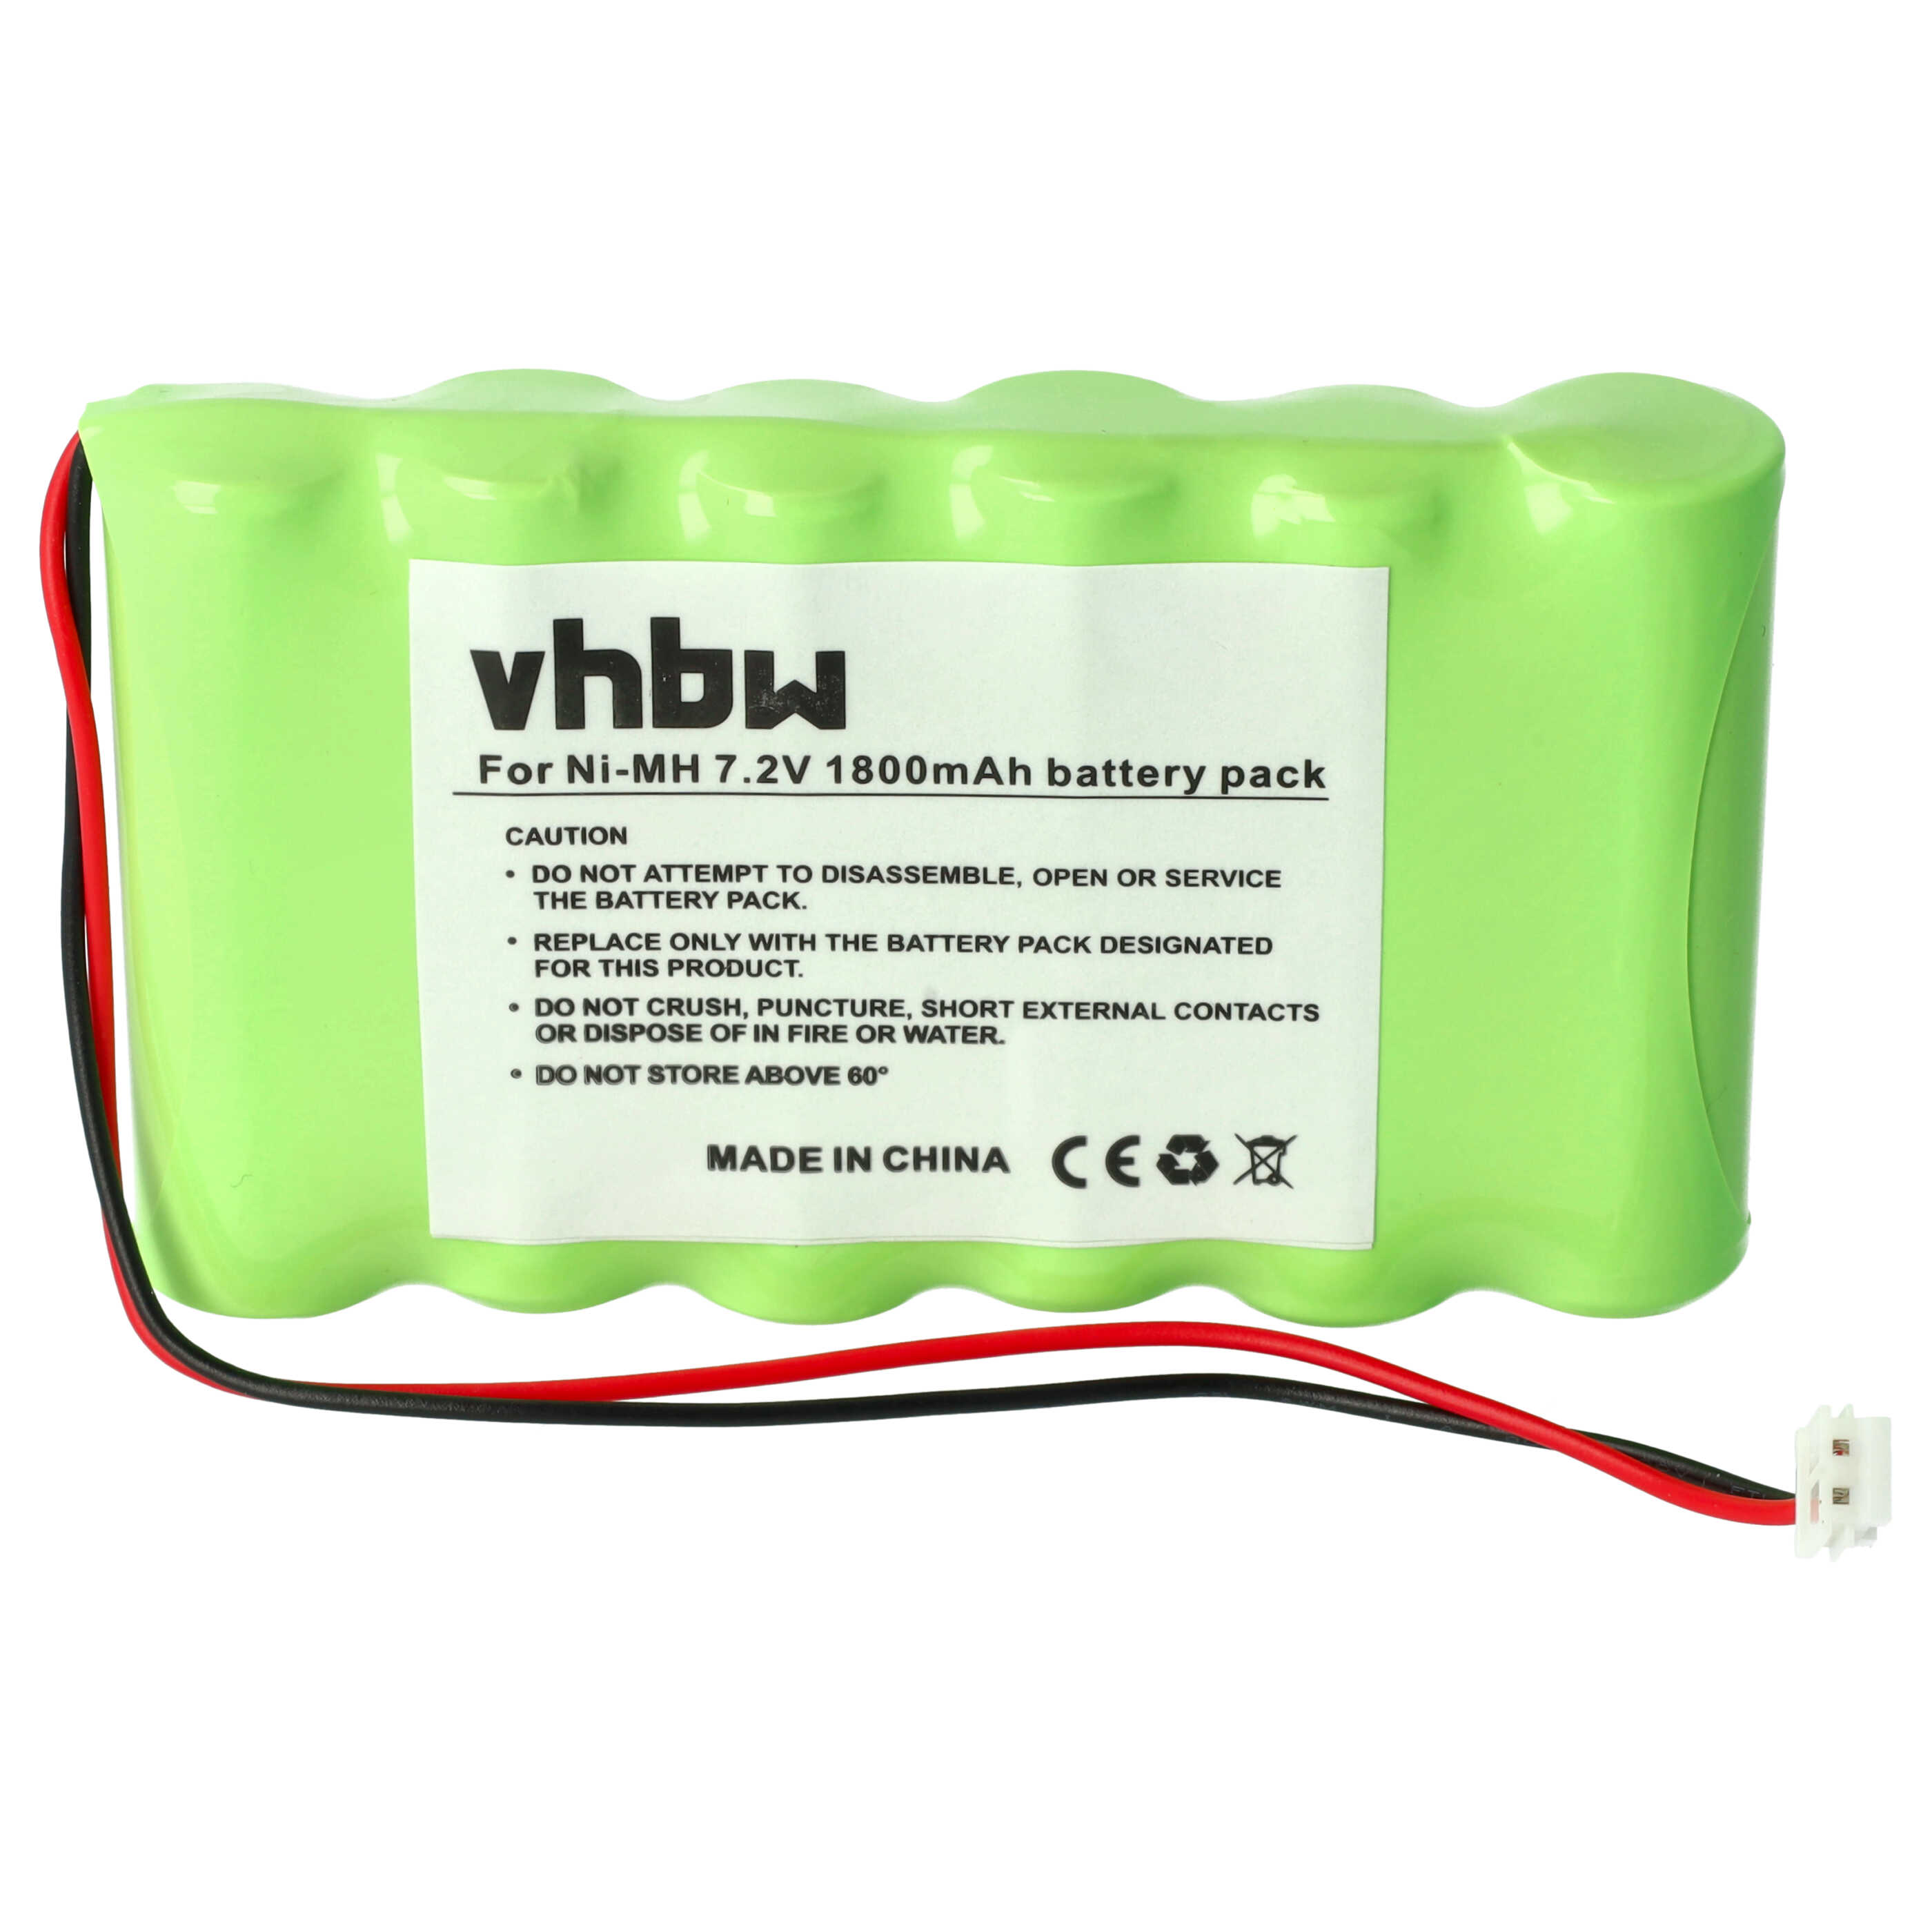 Batterie remplace Compex 032002690 pour appareil médical - 1800mAh 7,2V NiMH